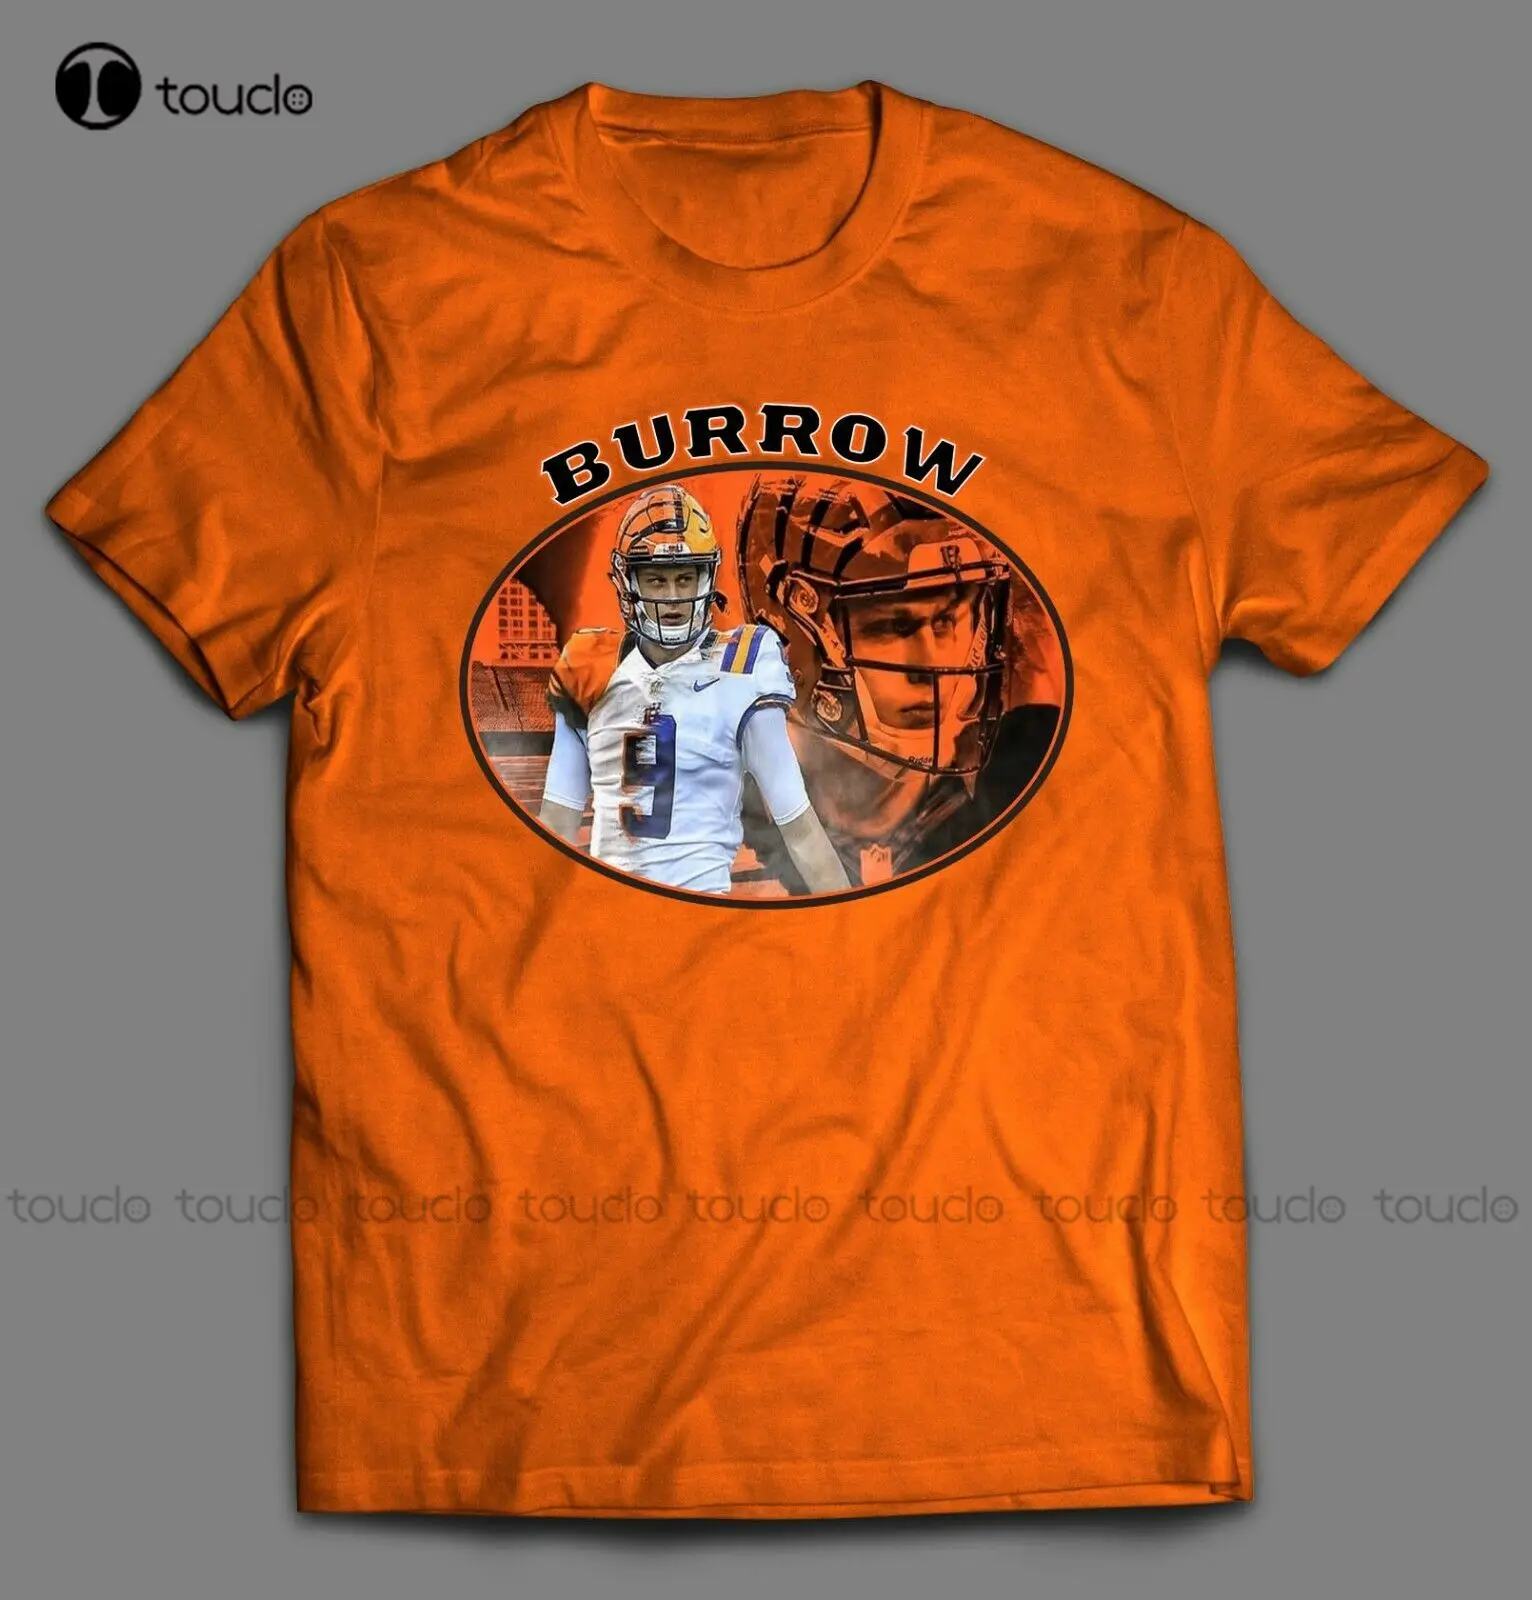 Joe Burrow "Cincinnati Joe" Who Dey Nation High Quality Mens Football Shirt tshirt dress